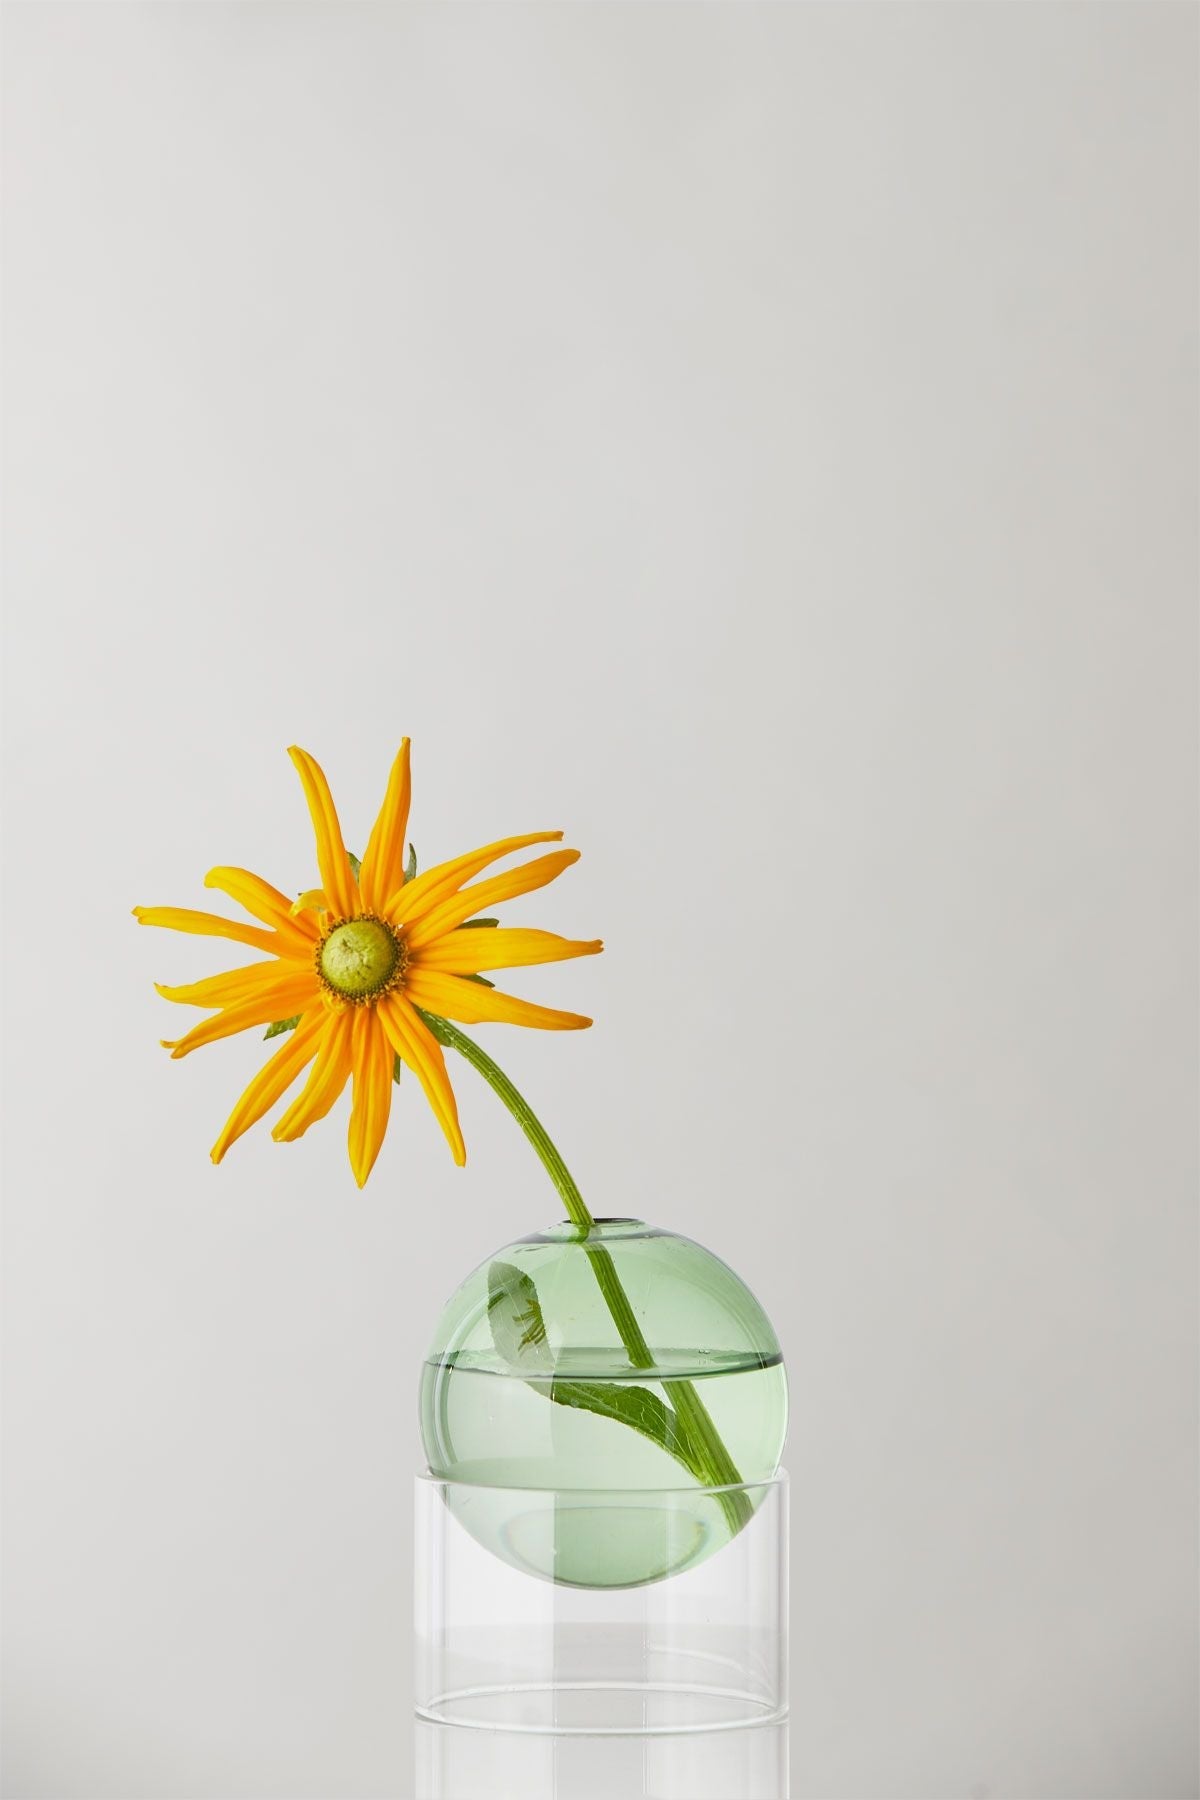 Studio over staande bloemen bellenvaas 10 cm, groen